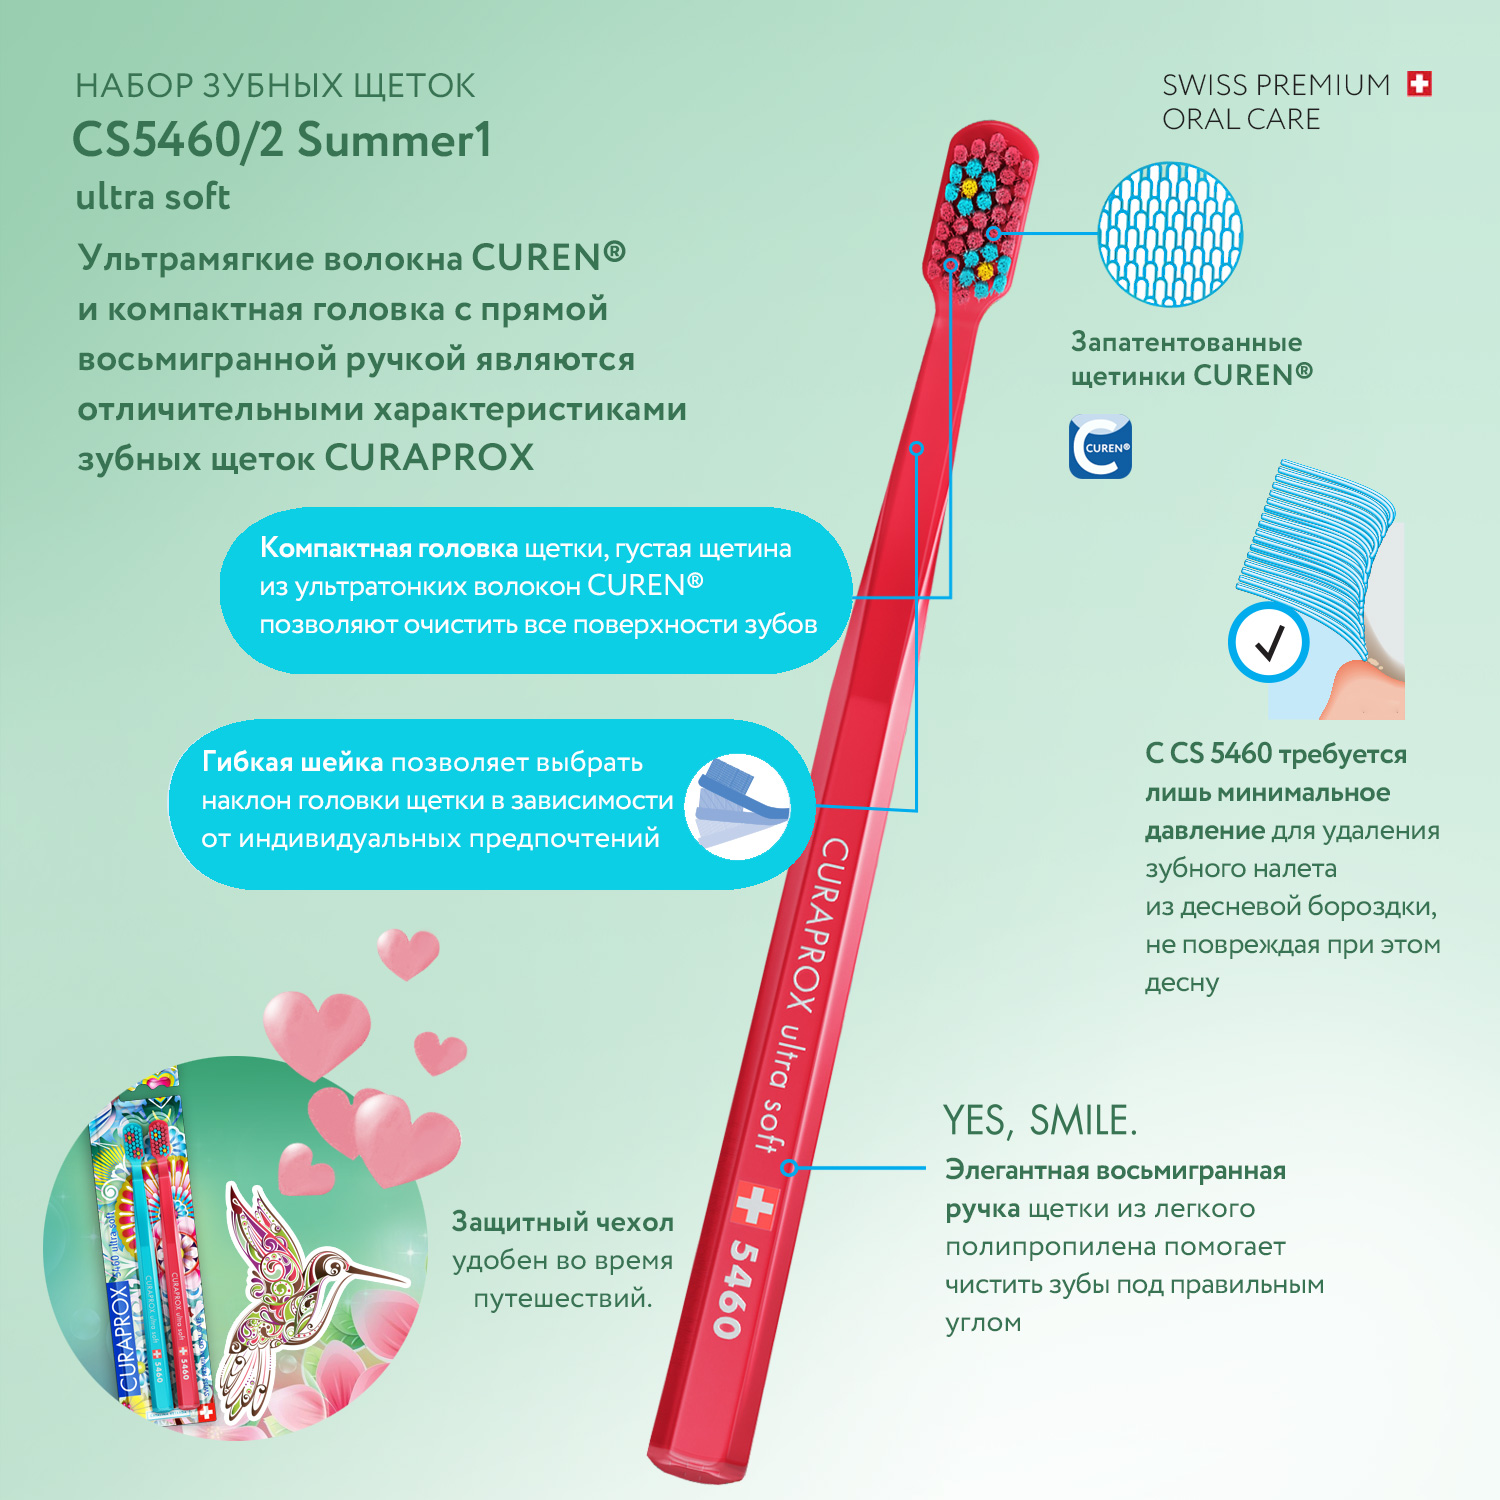 Набор зубных щеток Curaprox ultrasof Summer 2021 голубая-малиновая - фото 3